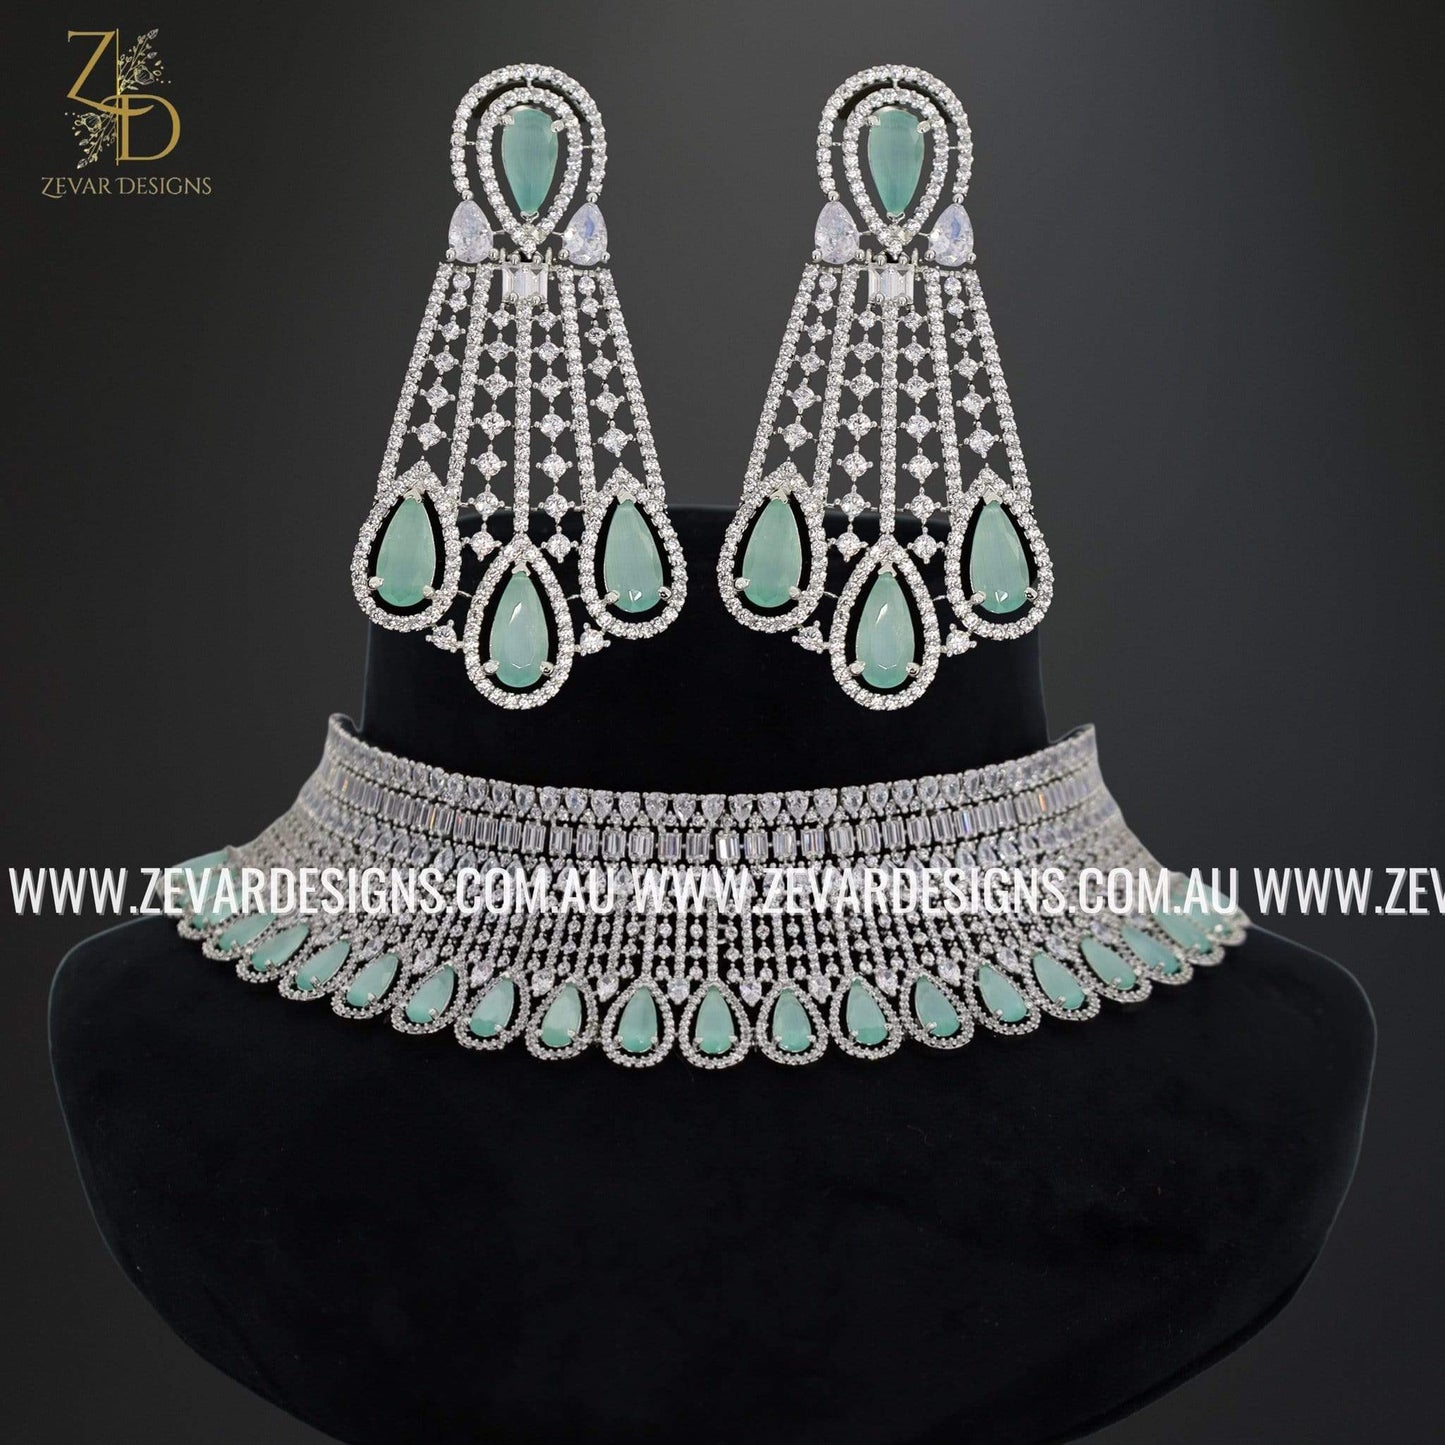 Zevar Designs Necklace Sets AD/Zircon Necklace Set - Mint